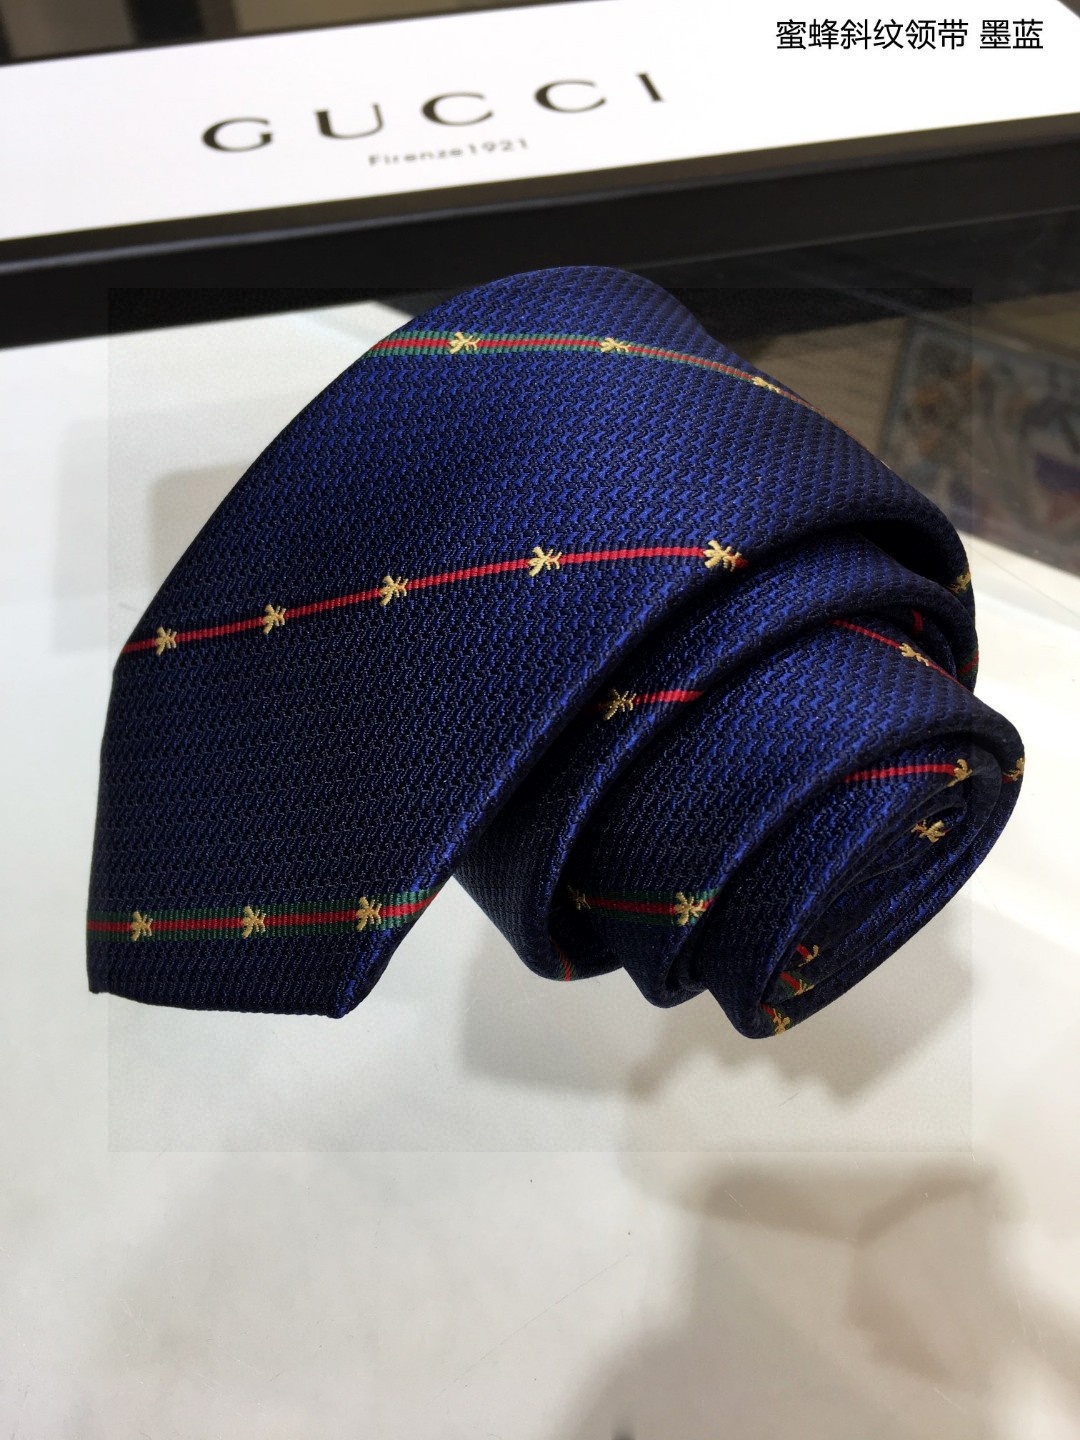 上新G家男士领带系列蜜蜂斜纹领带稀有展现精湛手工与时尚优雅的理想选择这款领带将标志性的主题动物小蜜蜂与斜